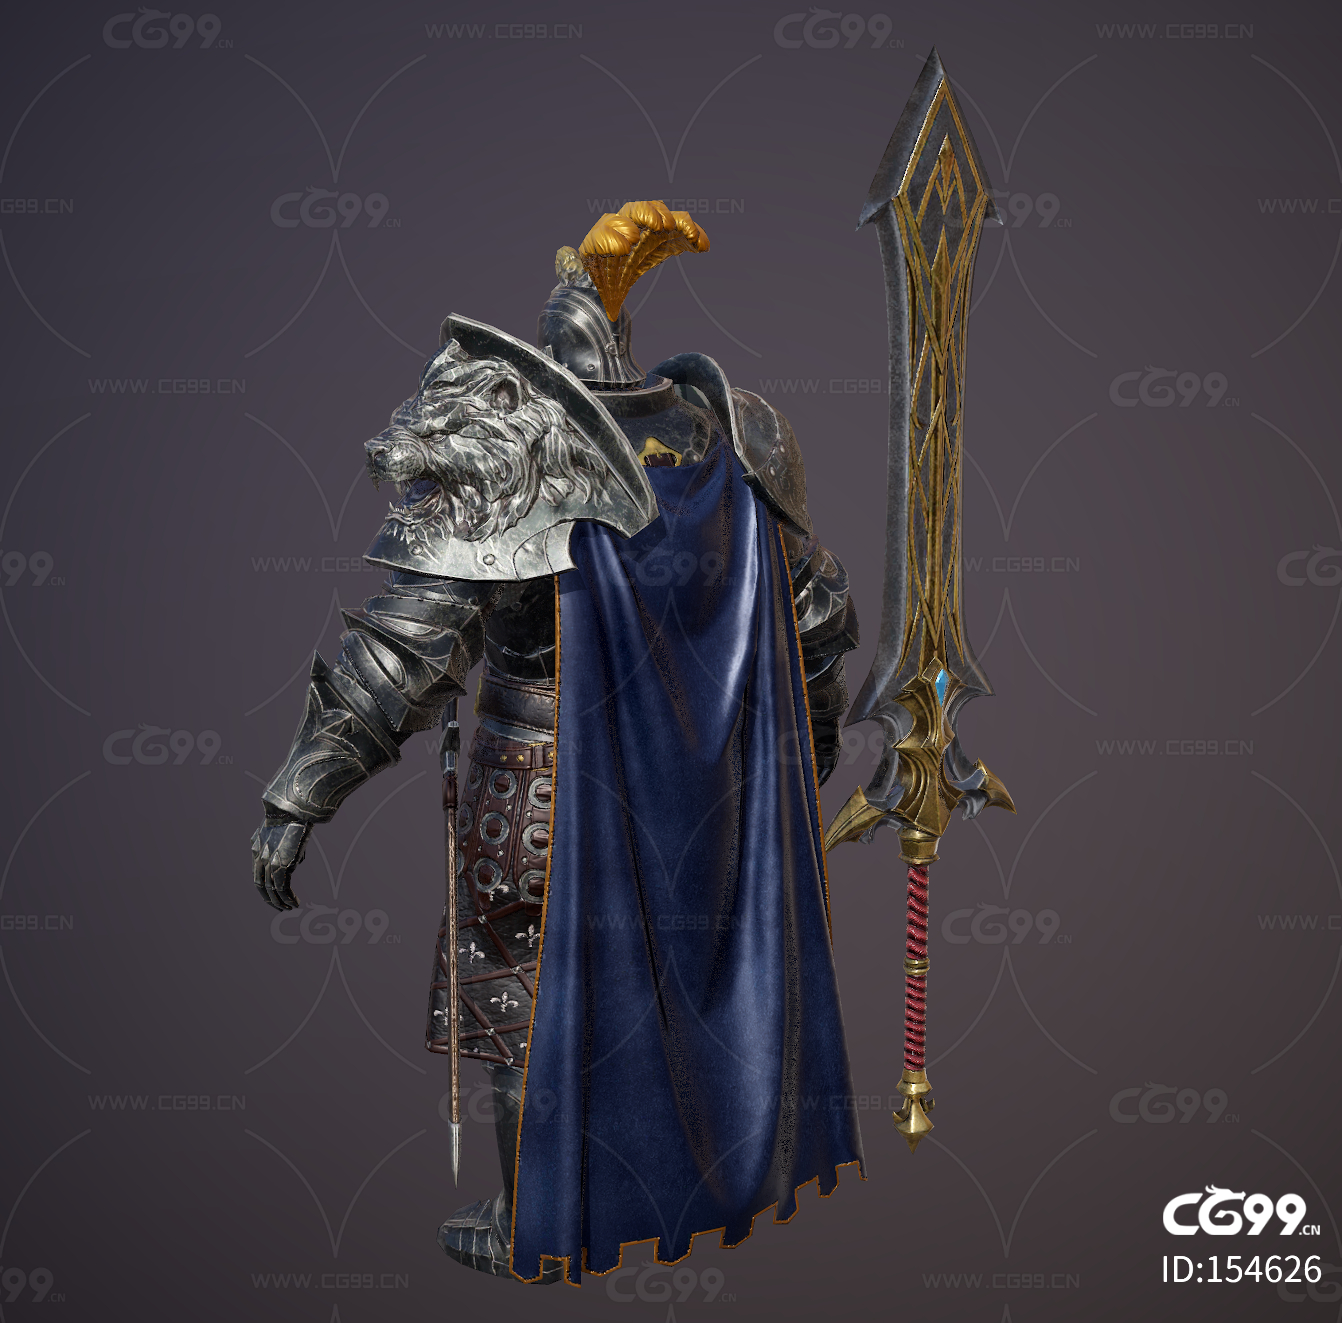 欧洲中世纪 皇家卫兵 十字军 骑士 守卫 守护者 护卫 勇士 士兵 将军 重甲 重剑-cg模型免费下载-CG99